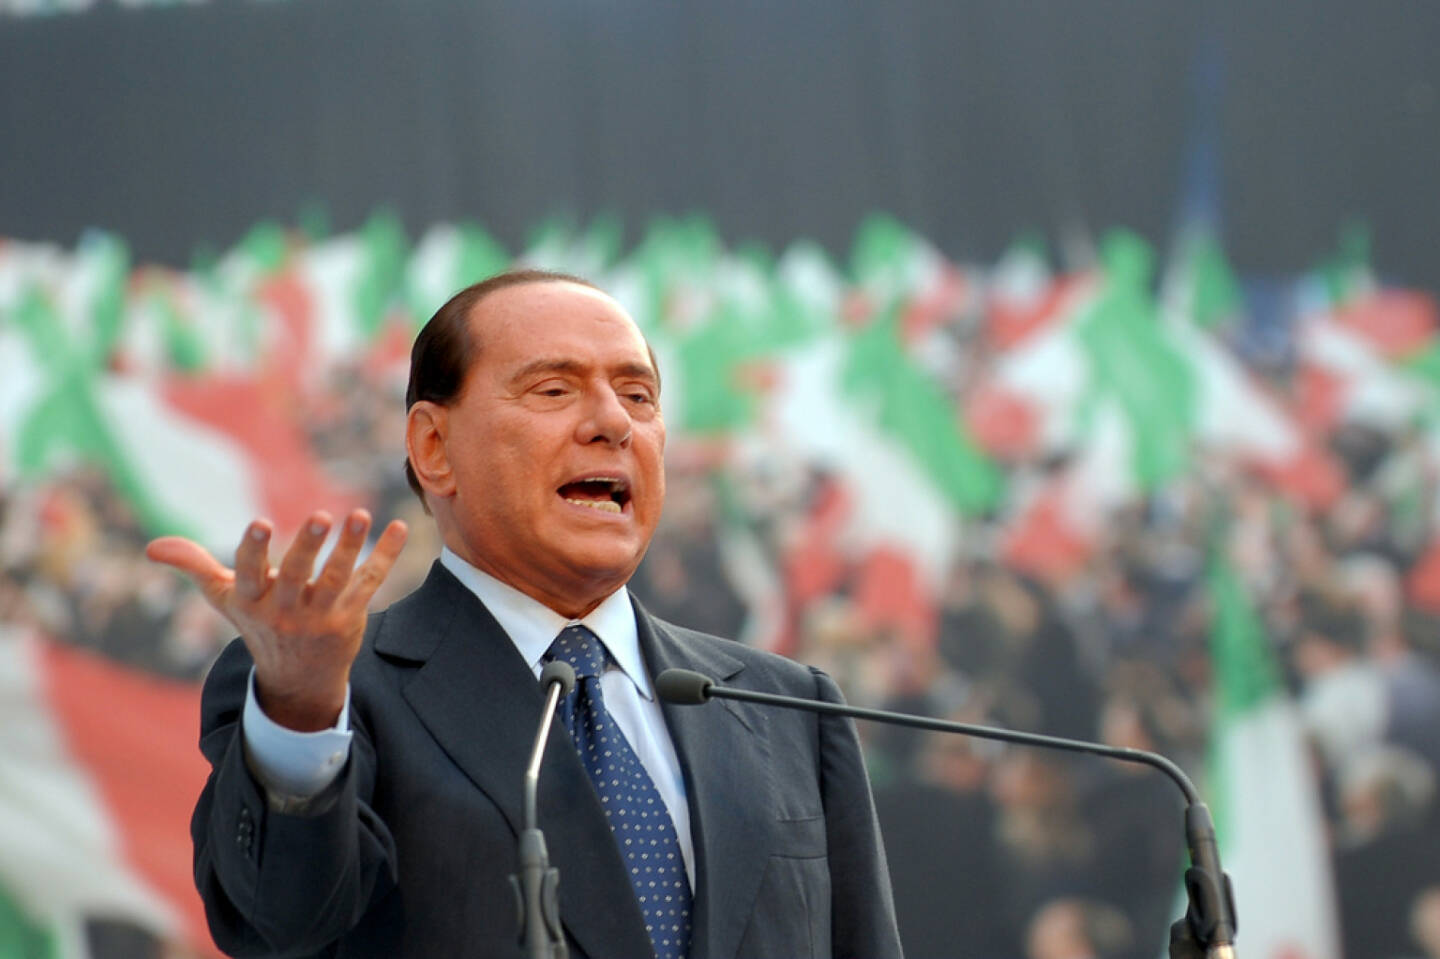 Silvio Berlusconi, <a href=http://www.shutterstock.com/gallery-667537p1.html?cr=00&pl=edit-00>miqu77</a> / <a href=http://www.shutterstock.com/?cr=00&pl=edit-00>Shutterstock.com</a> , miqu77 / Shutterstock.com